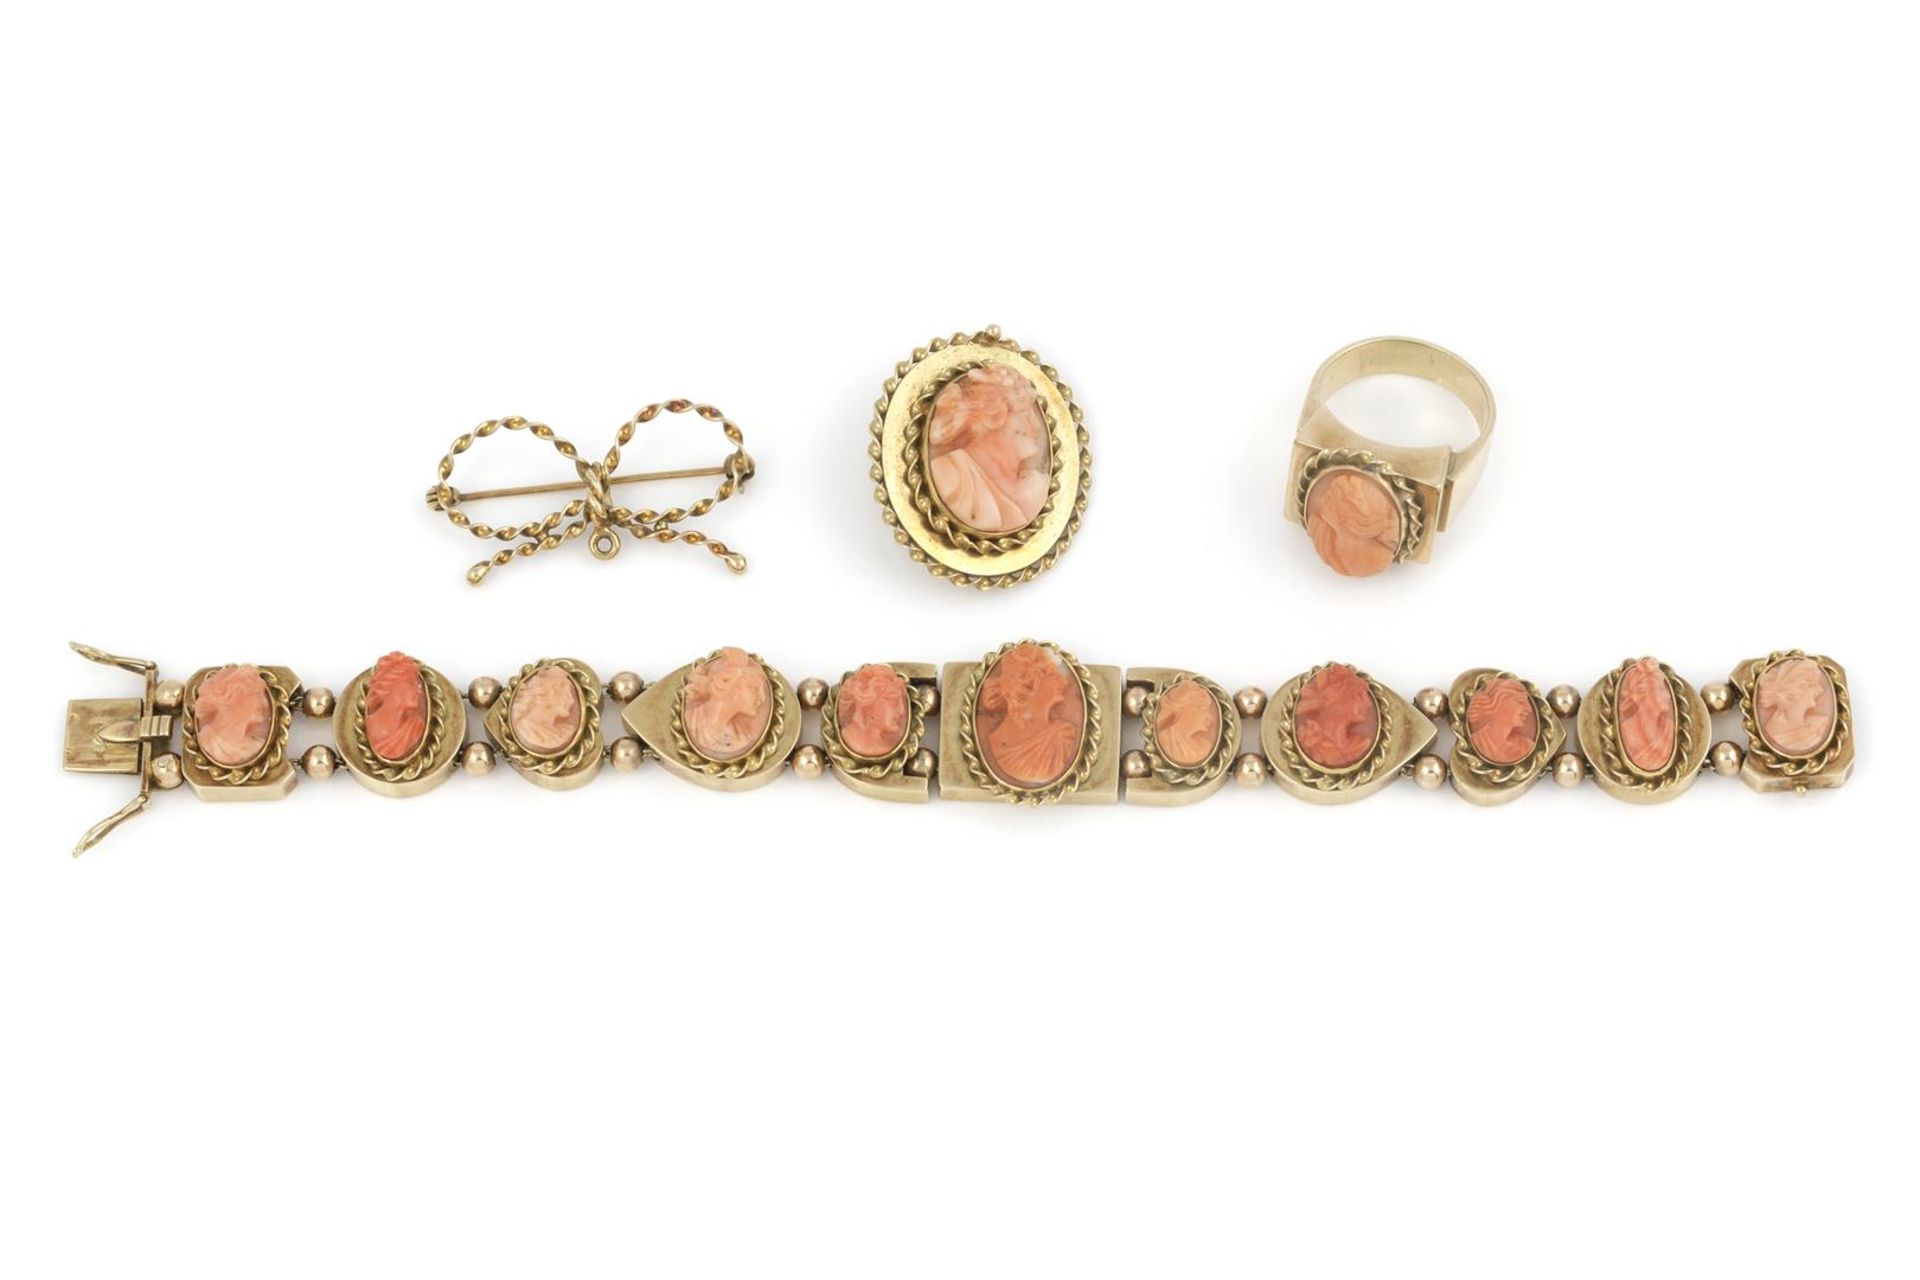 14 krt. gouden parure met camées van bloedkoraal, bestaande uit armband, een hanger, ring en